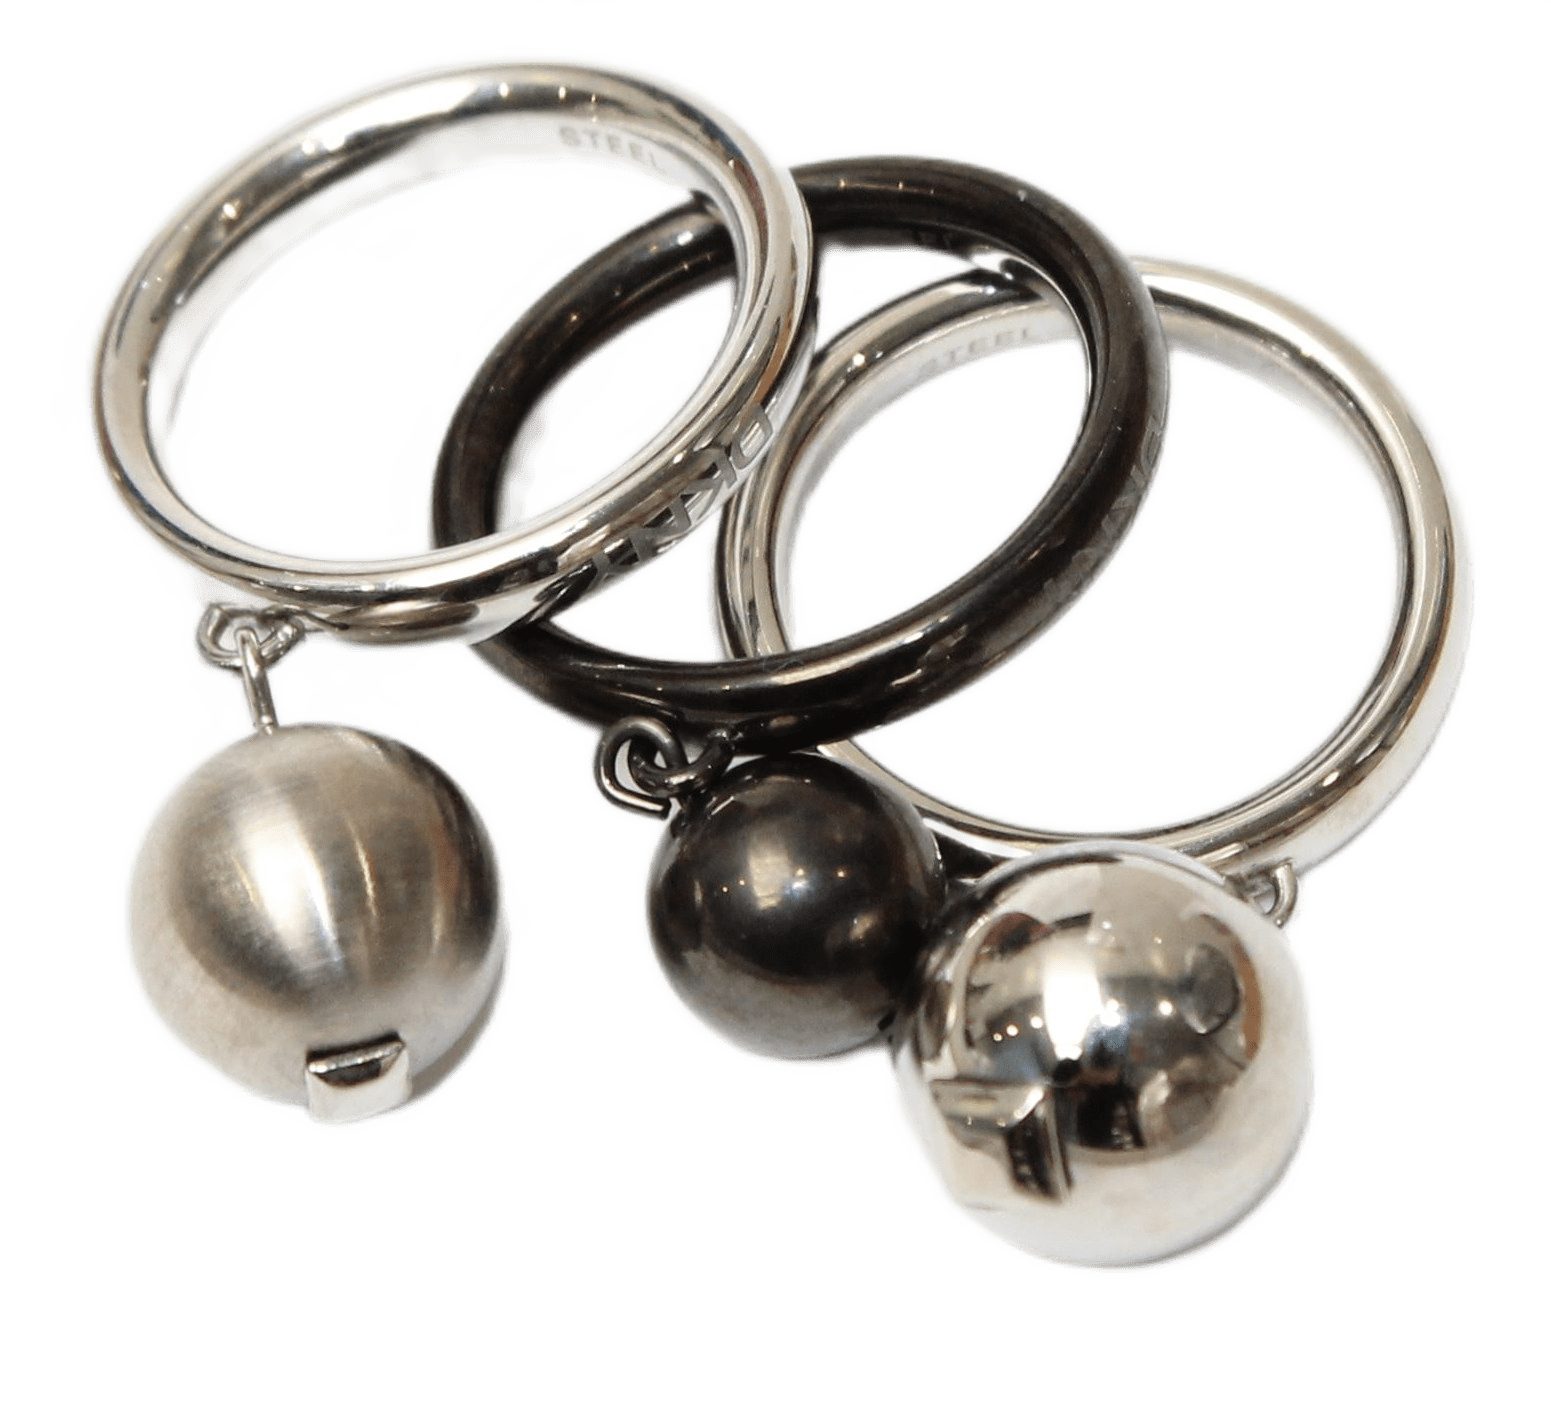 DKNY Fingerring Damen, aus Edelstahl, Silber/Grau/Schwarz, Perlen, Gr. 54 (17,2mm)